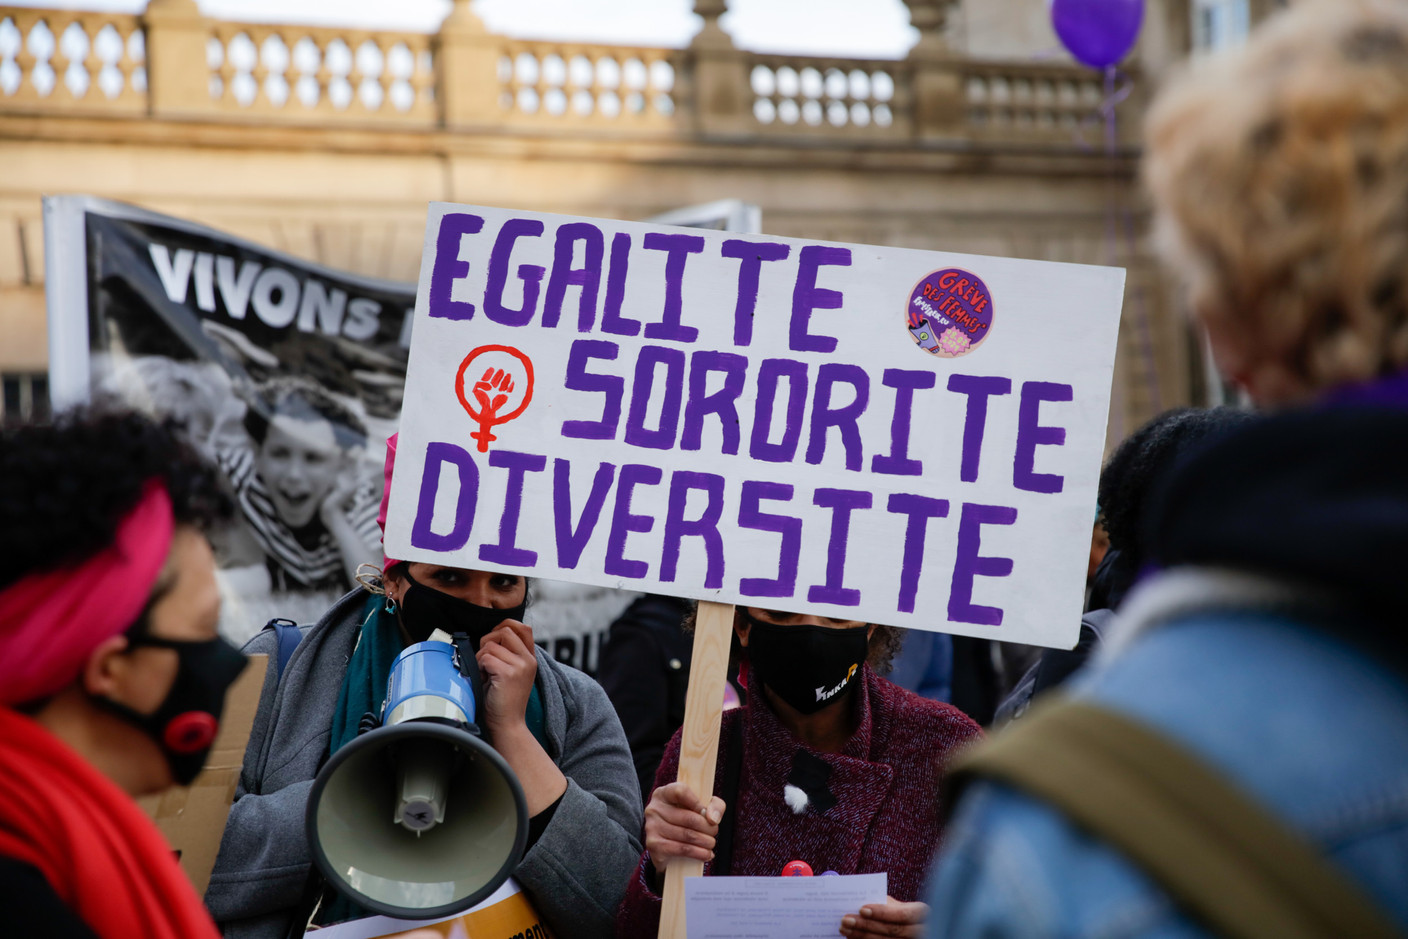 «Égalité, sororité, diversité». (Photo: Romain Gamba / Maison Moderne)